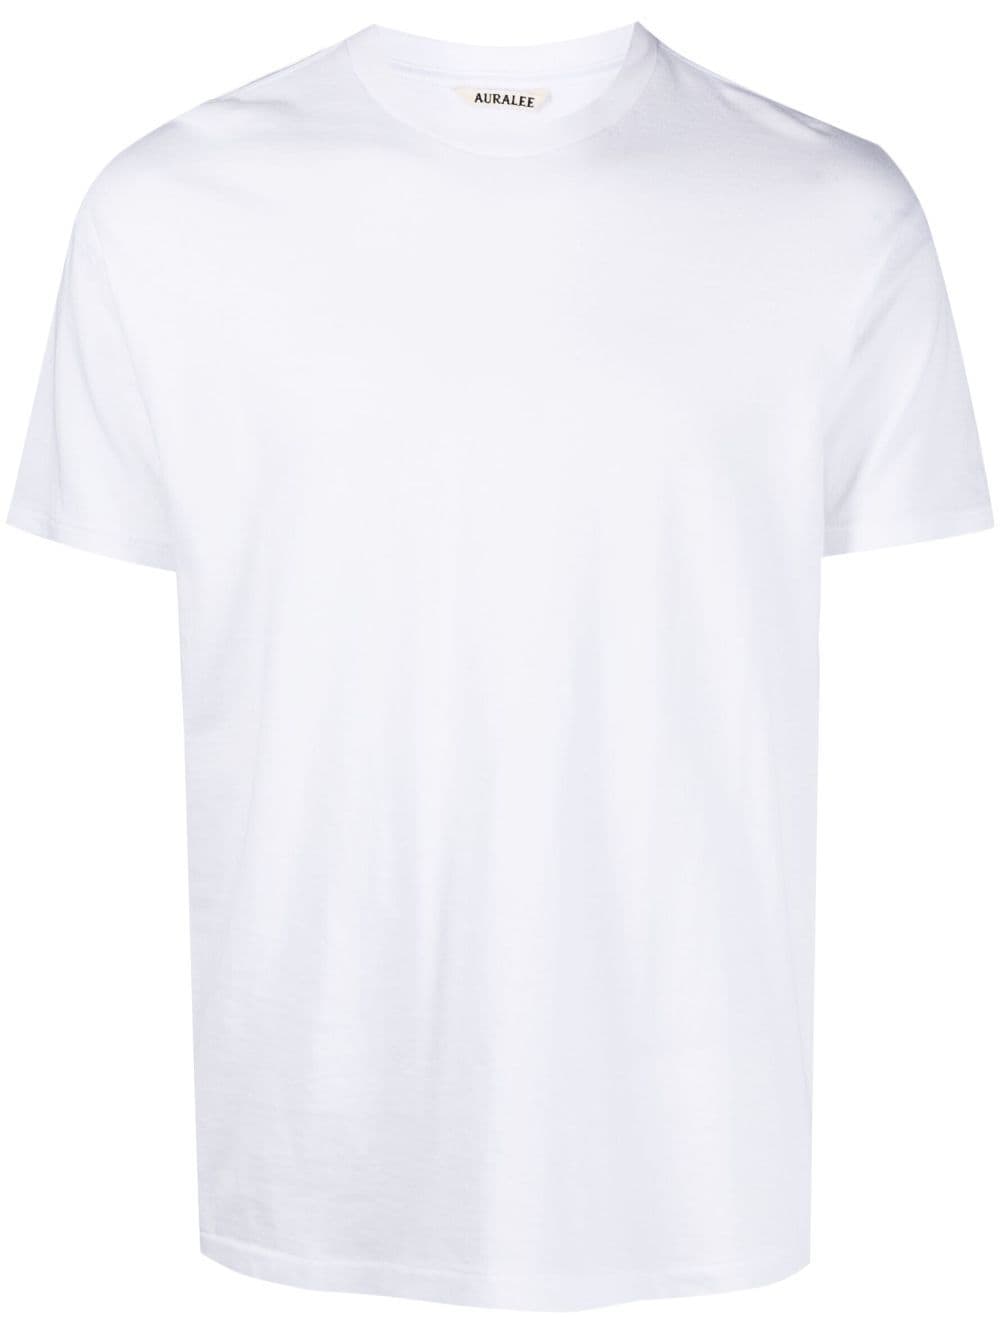 Auralee Crew-neck Cotton T-shirt In White